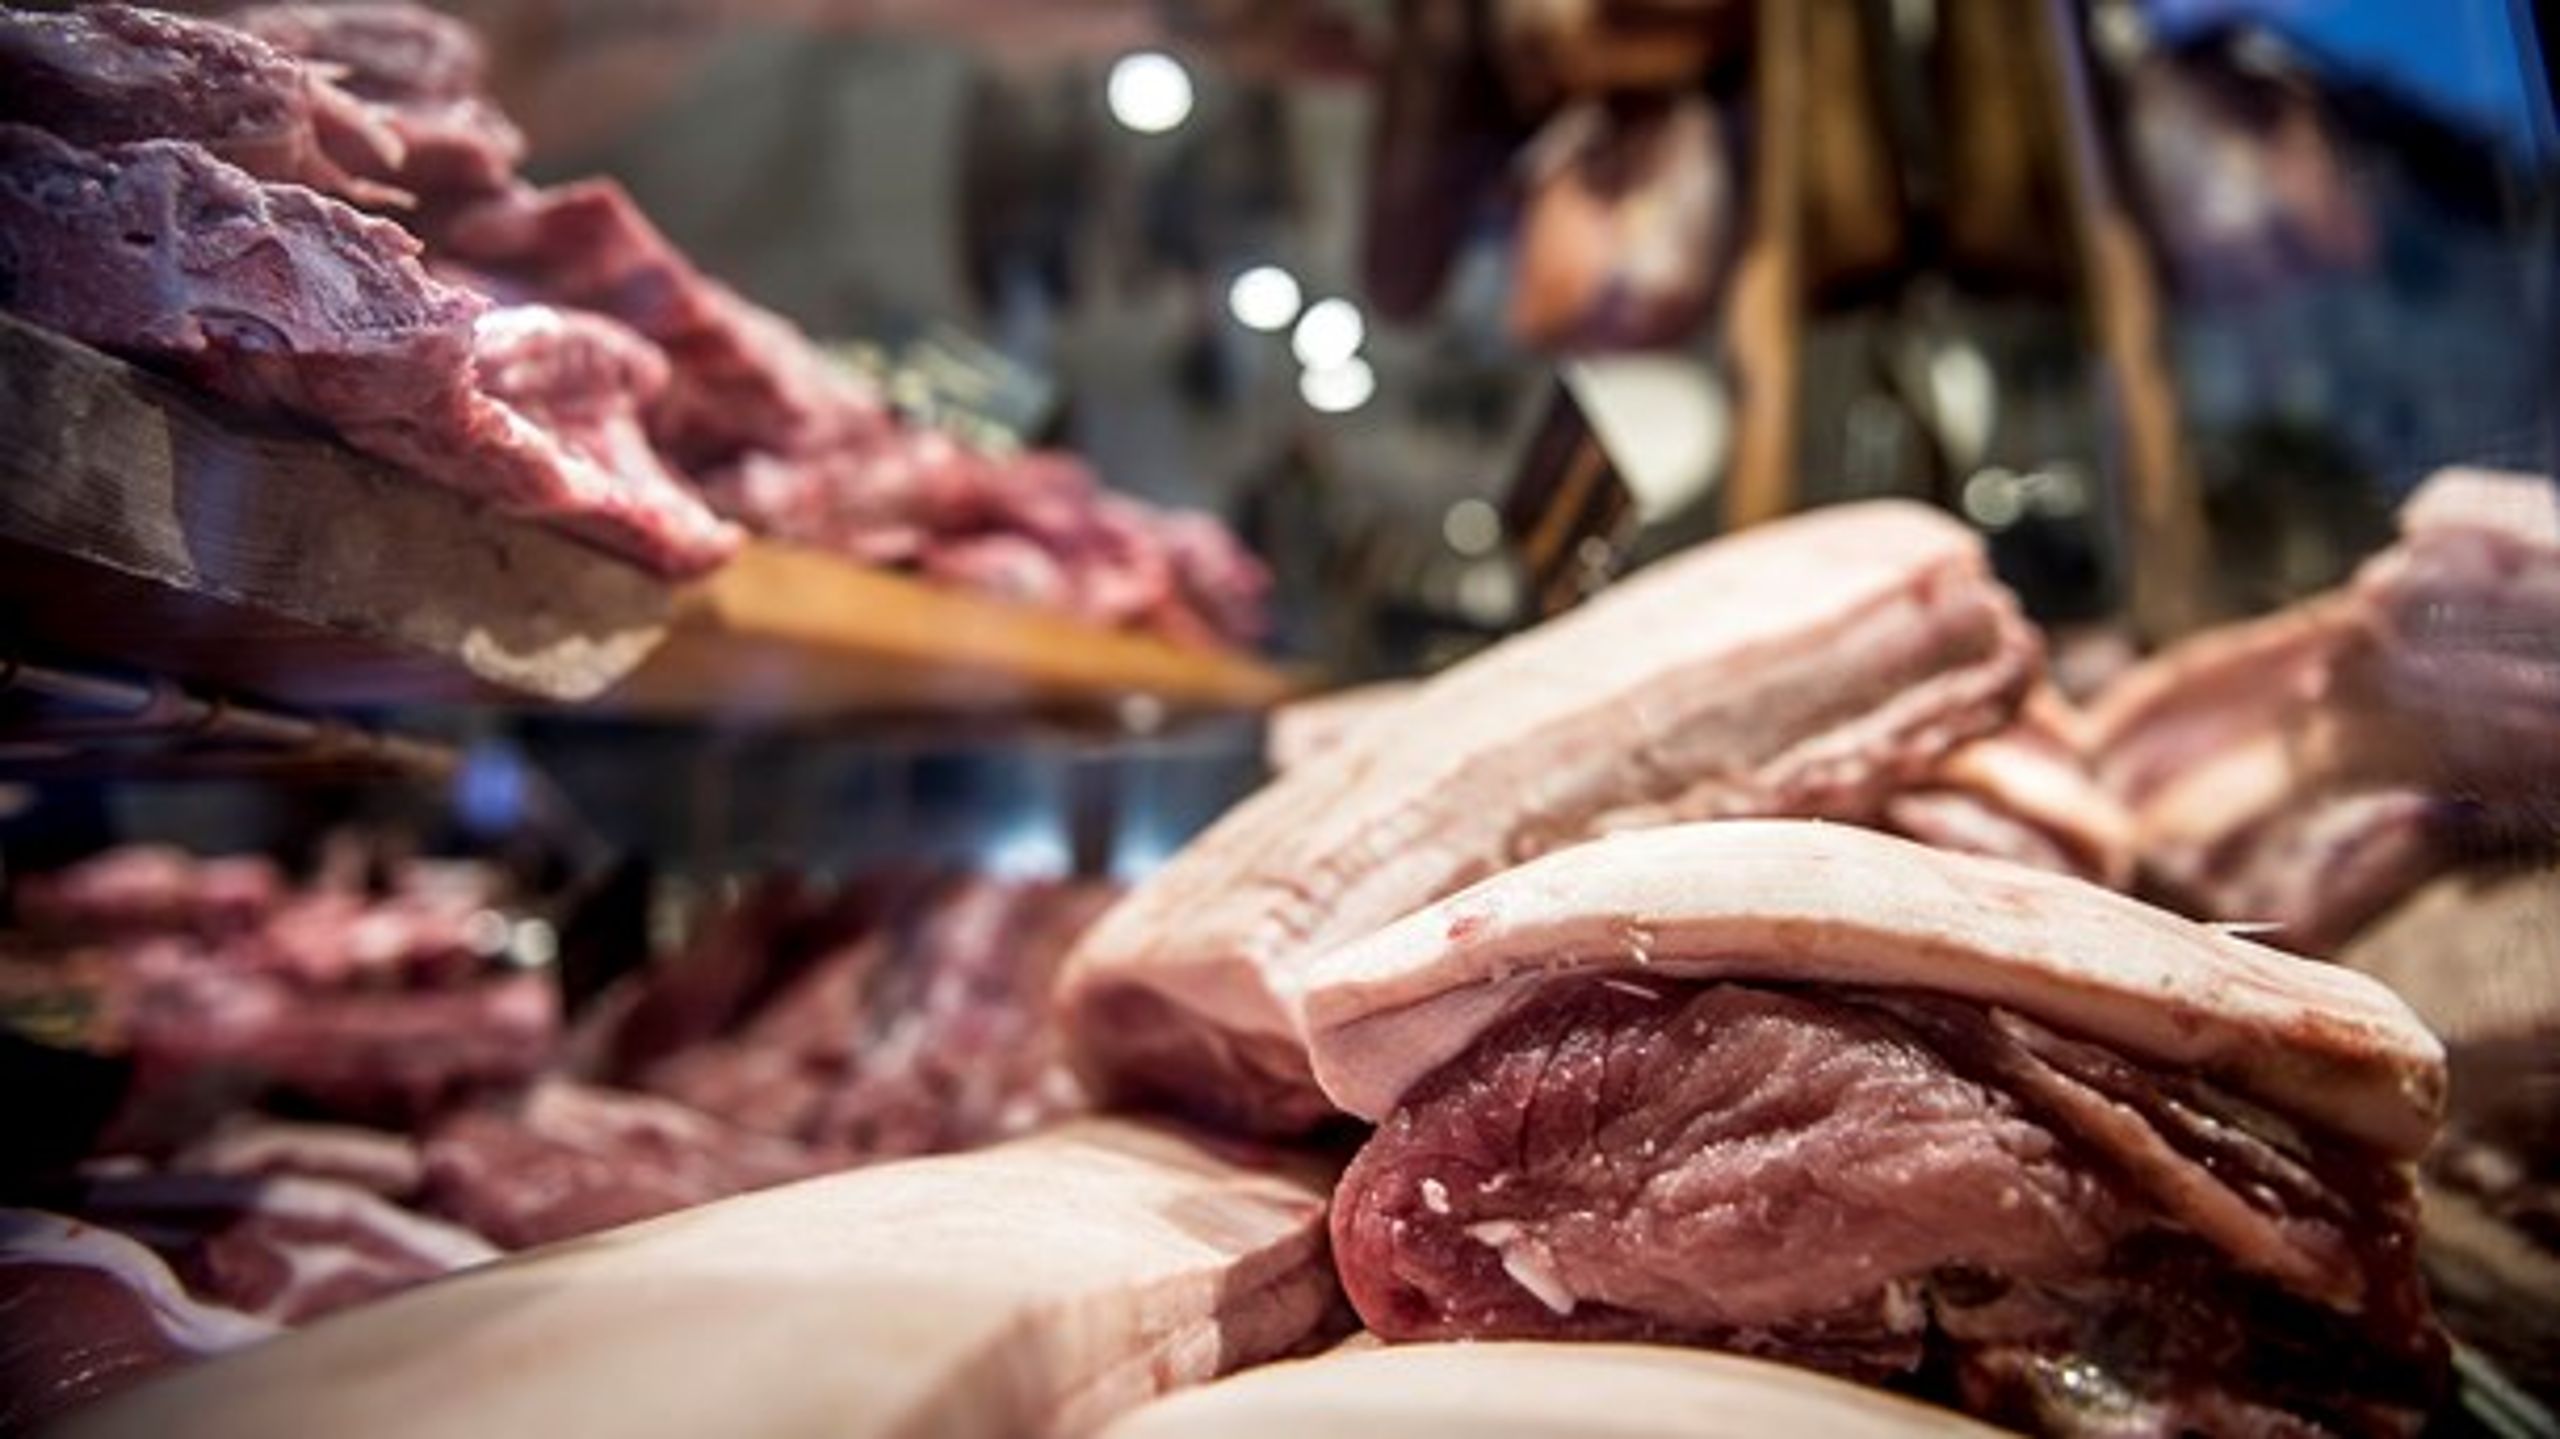 Et kilo kød produceret i Sydamerika og fragtet til dit lokale supermarked udleder fem gange mindre CO2, end hvis du henter et tilsvarende kilo i egen bil ti kilometer væk i den nærmeste gårdbutik, viser beregninger fra Aalborg Universitet.